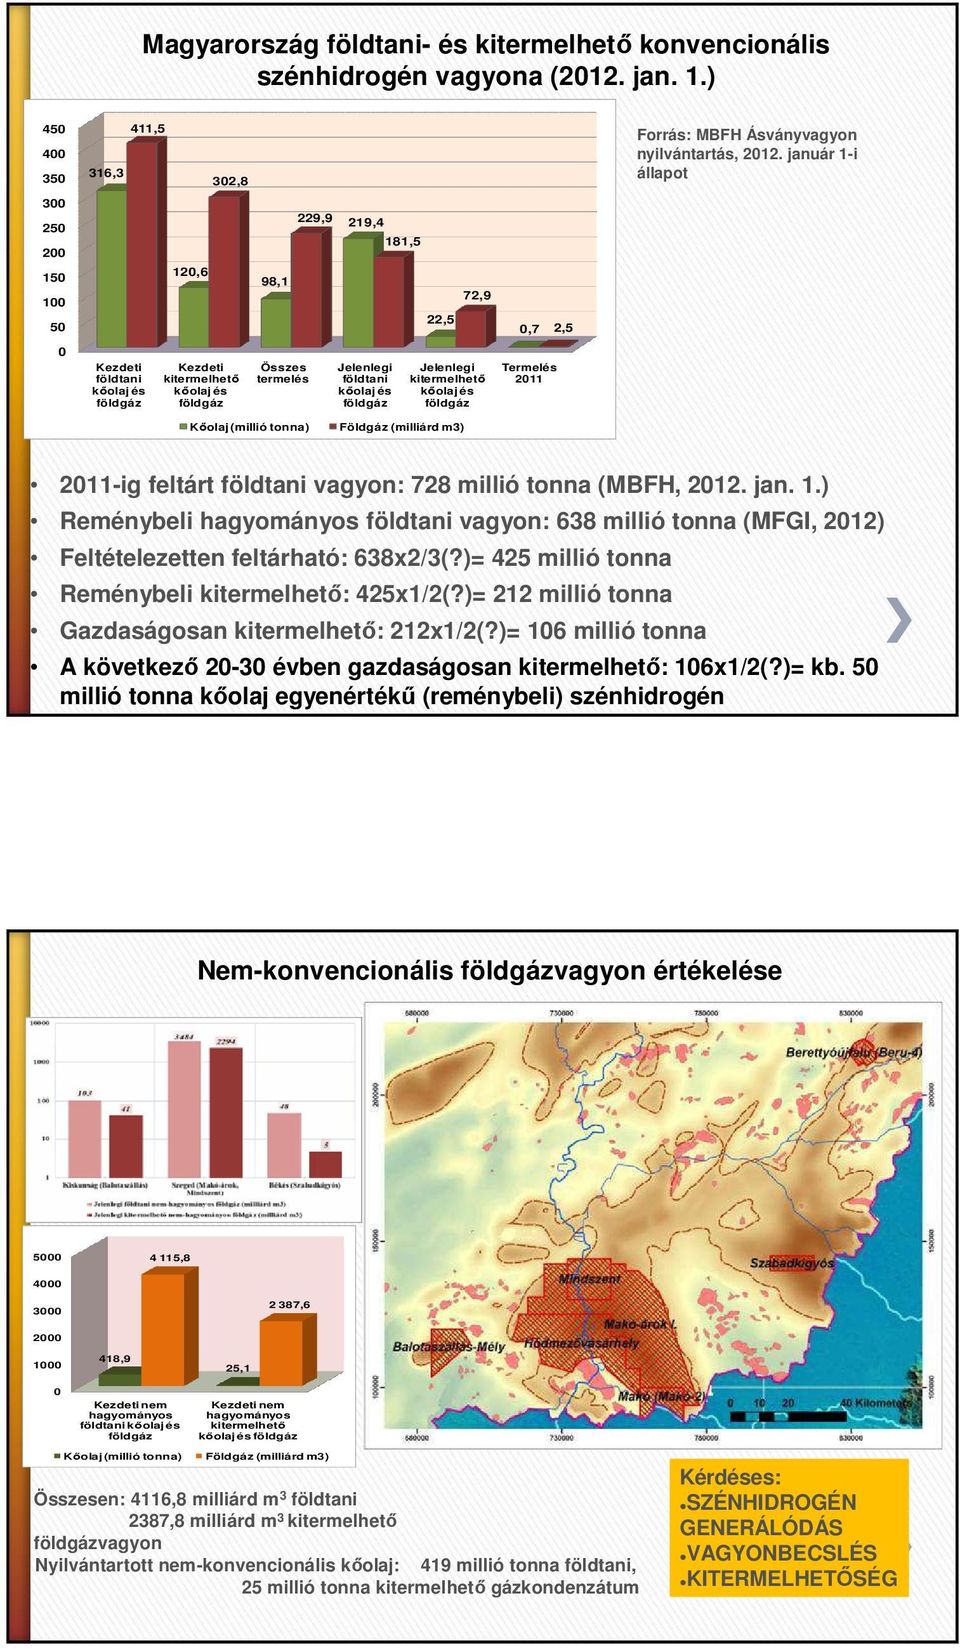 földgáz 181,5 22,5 72,9 Jelenlegi kitermelhető kőolaj és földgáz Kőolaj (millió tonna) Földgáz (milliárd m3) 0,7 Termelés 2011 2,5 Forrás: MBFH Ásványvagyon nyilvántartás, 2012.